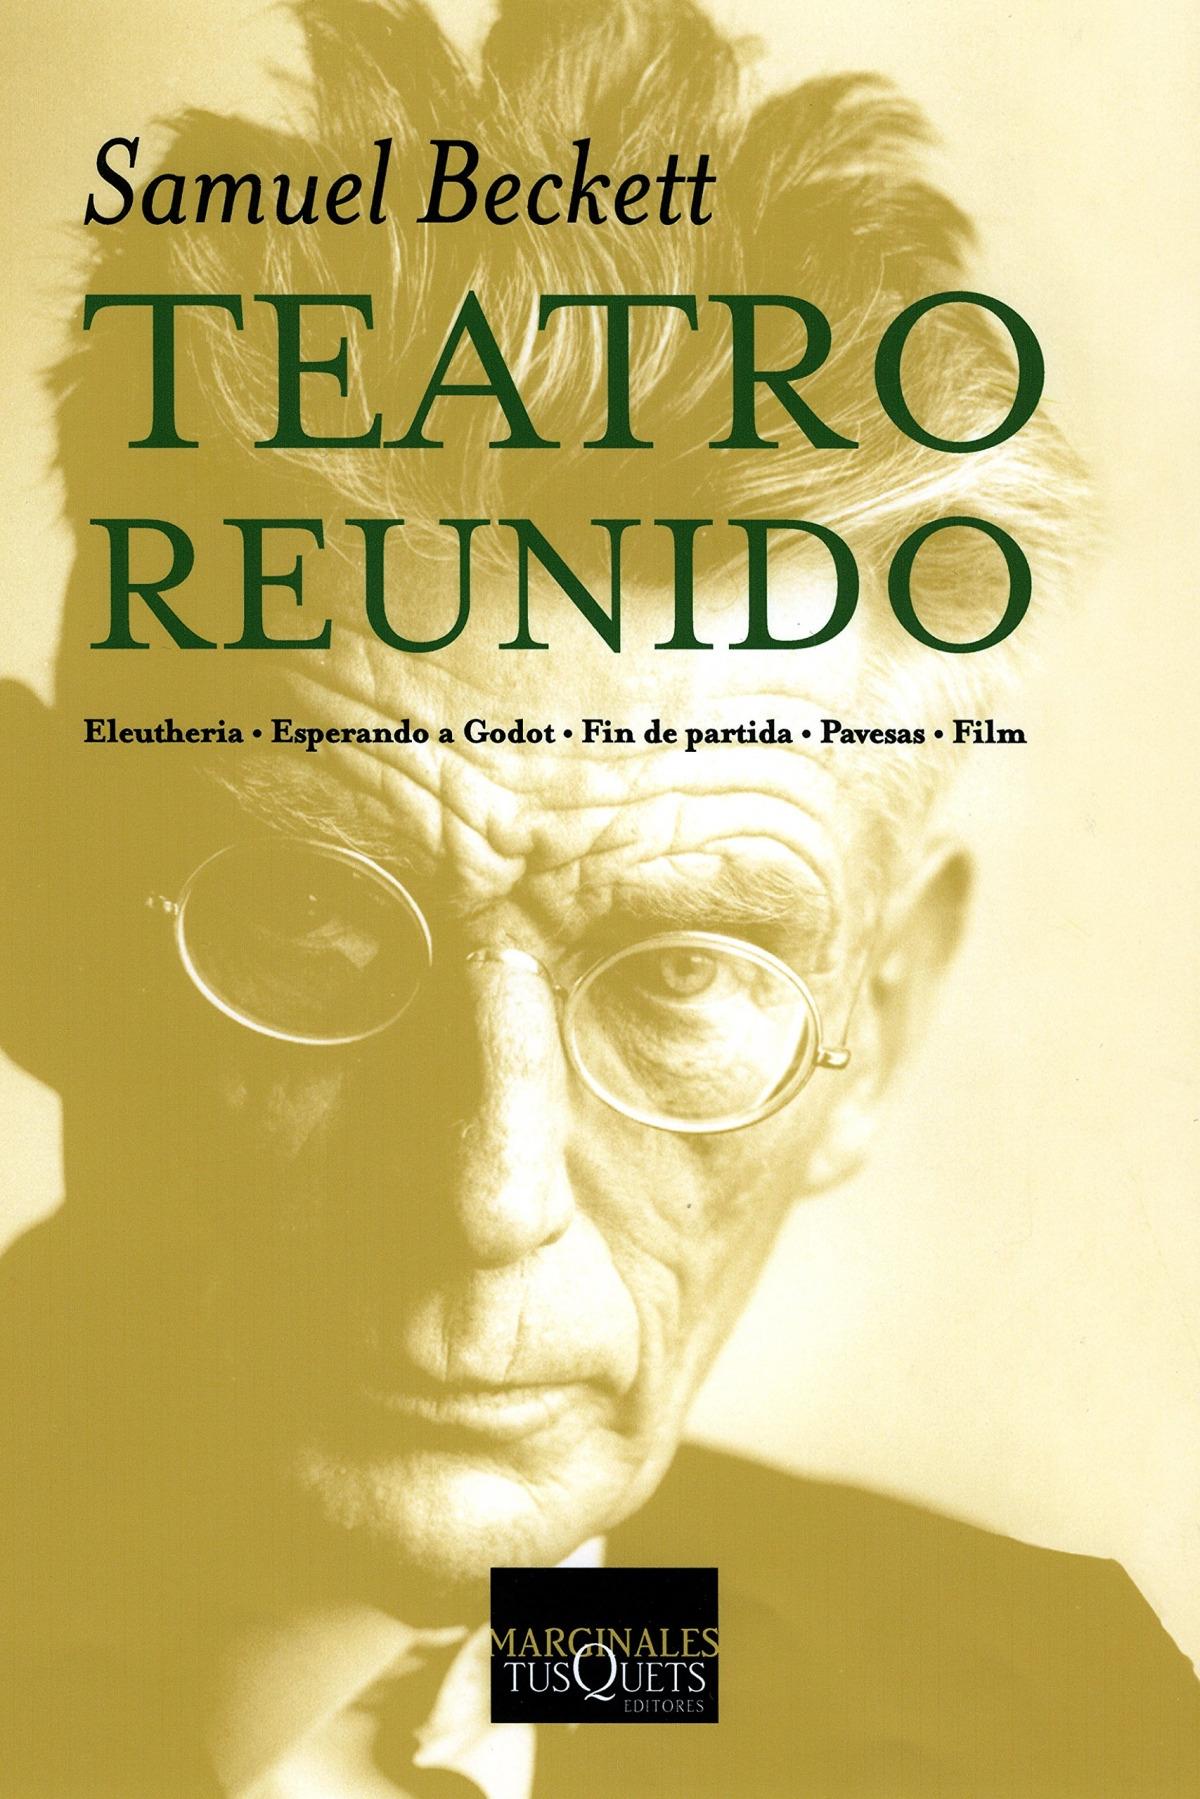 Teatro reunido "Eleutheria / Esperando a Godot / Fin de partida / Pavesas / Film (Samuel Beckett)"